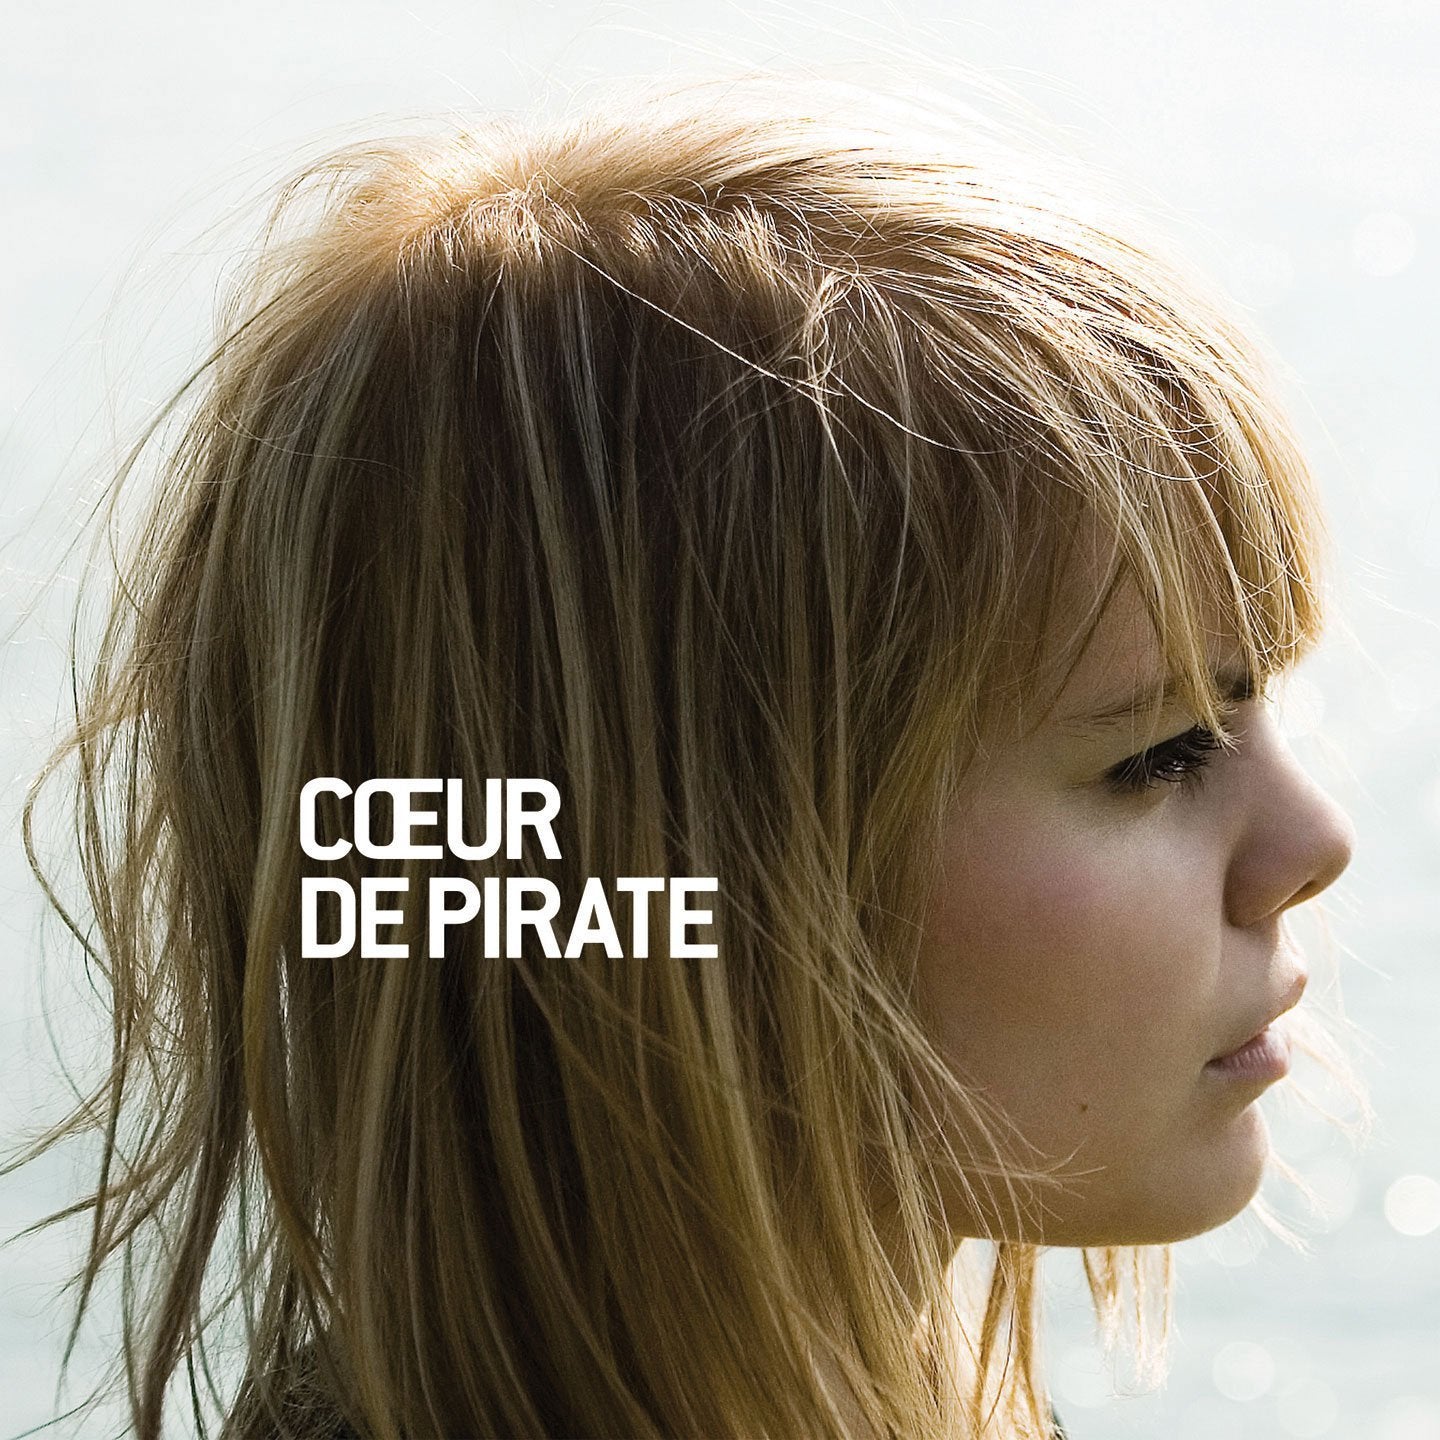 Album numérique Coeur de pirate - Coeur de pirate